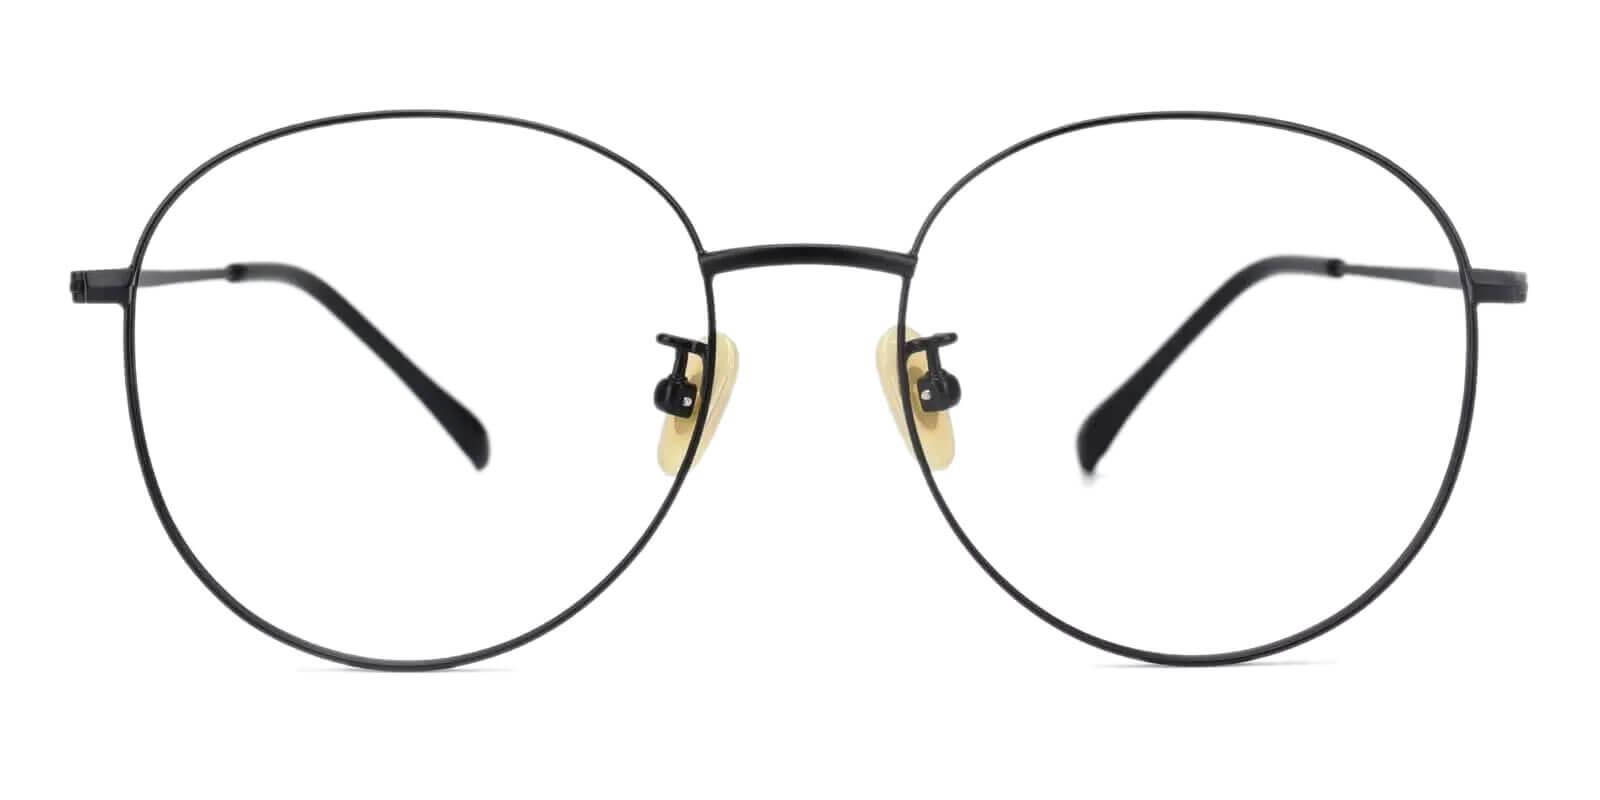 Mongolia Black Titanium Eyeglasses , Lightweight , NosePads Frames from ABBE Glasses